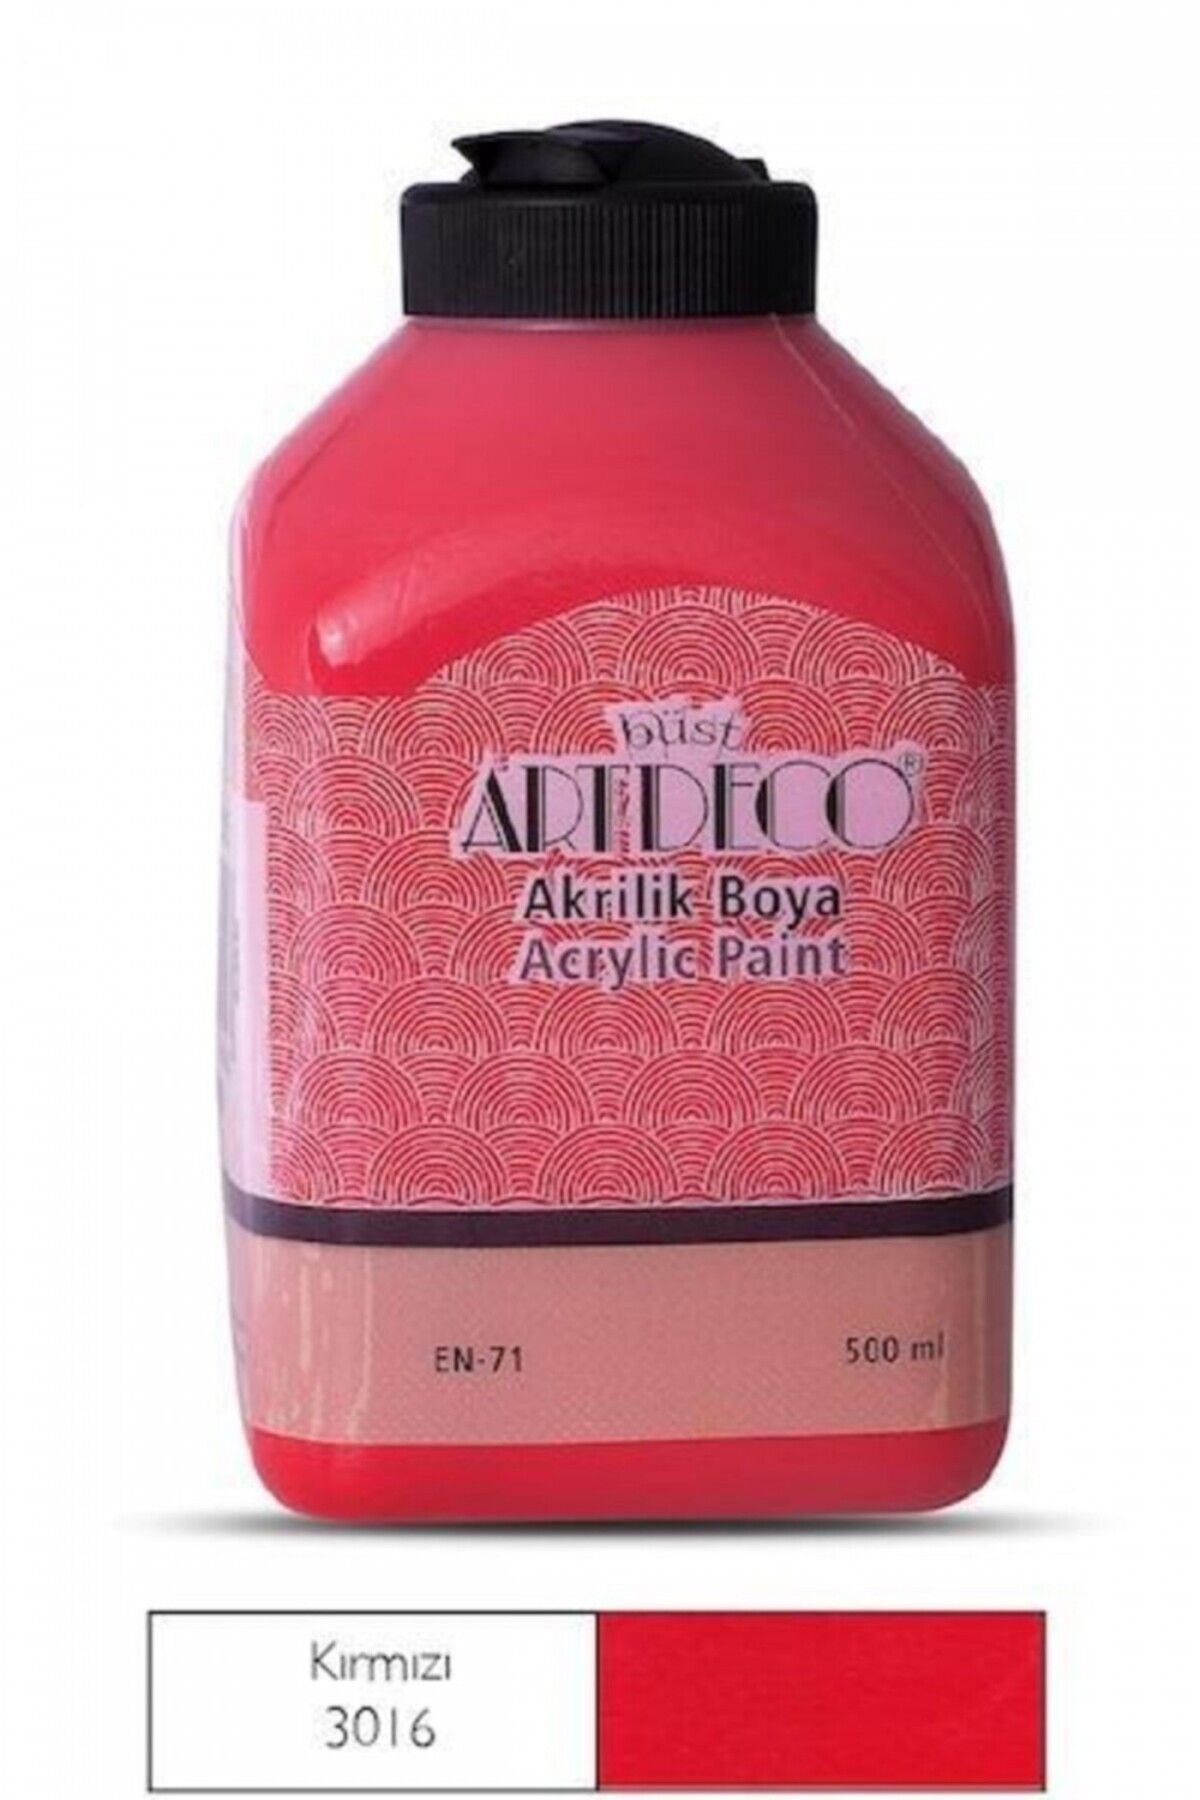 Artdeco Akrilik Boya 500ml Kırmızı / 3016